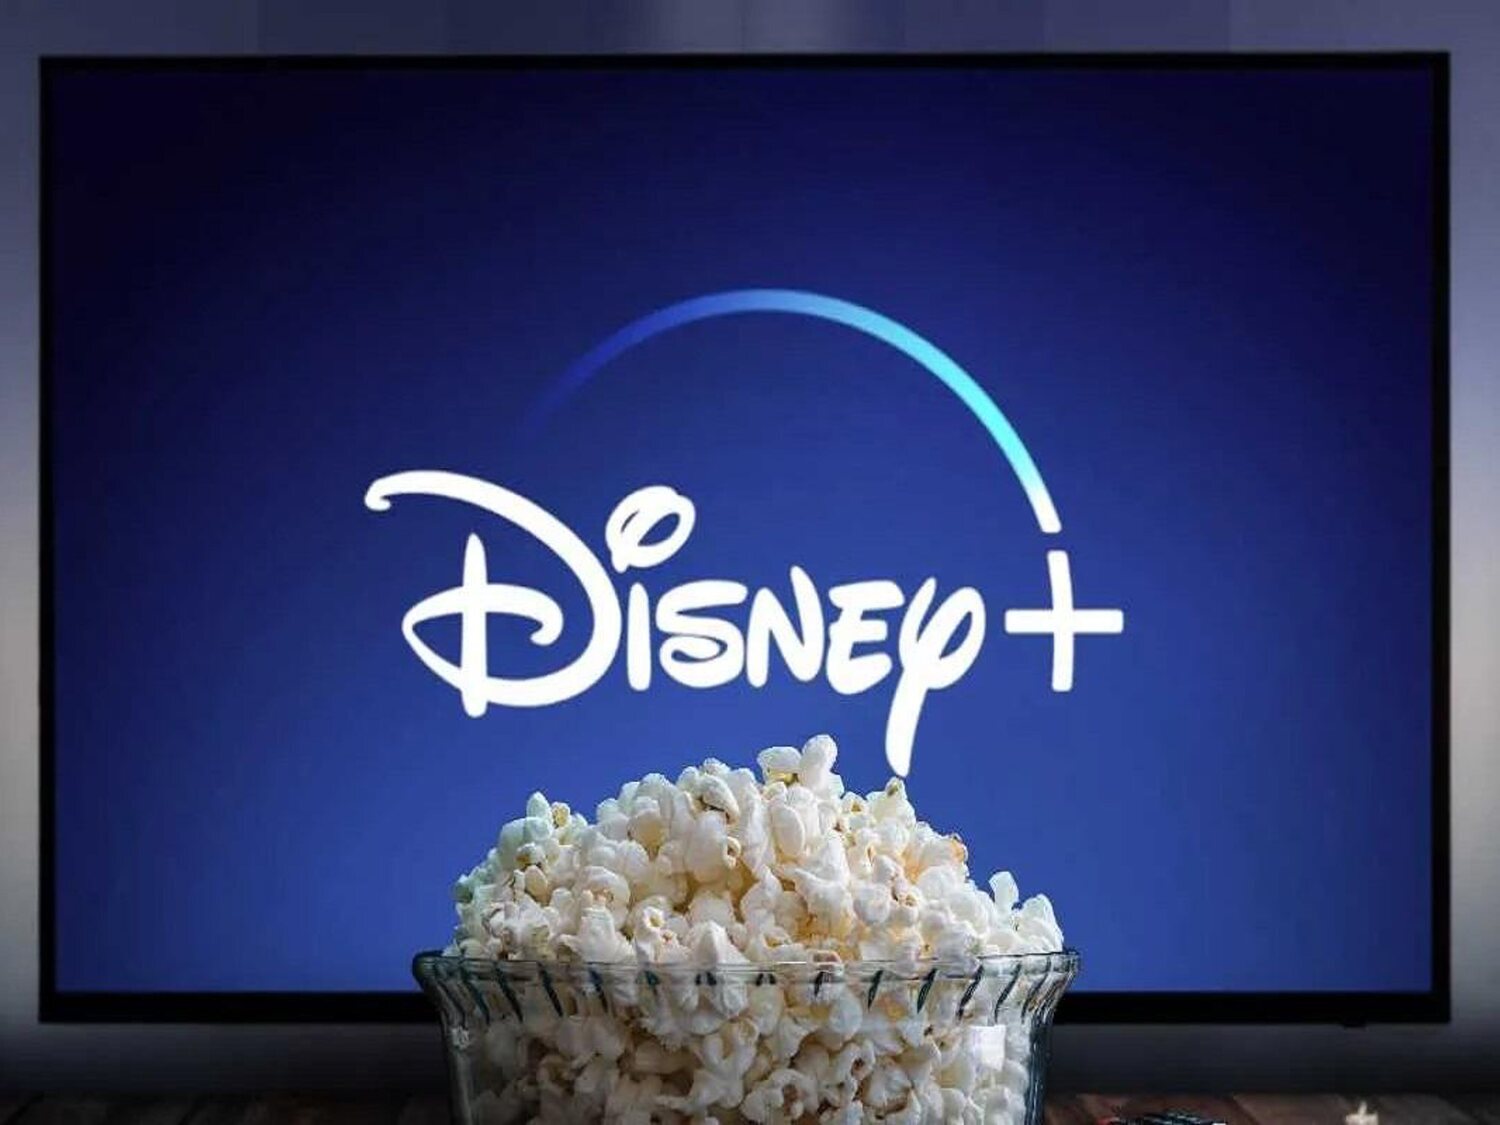 Disney+ lanza una promoción a 1,99 euros al mes